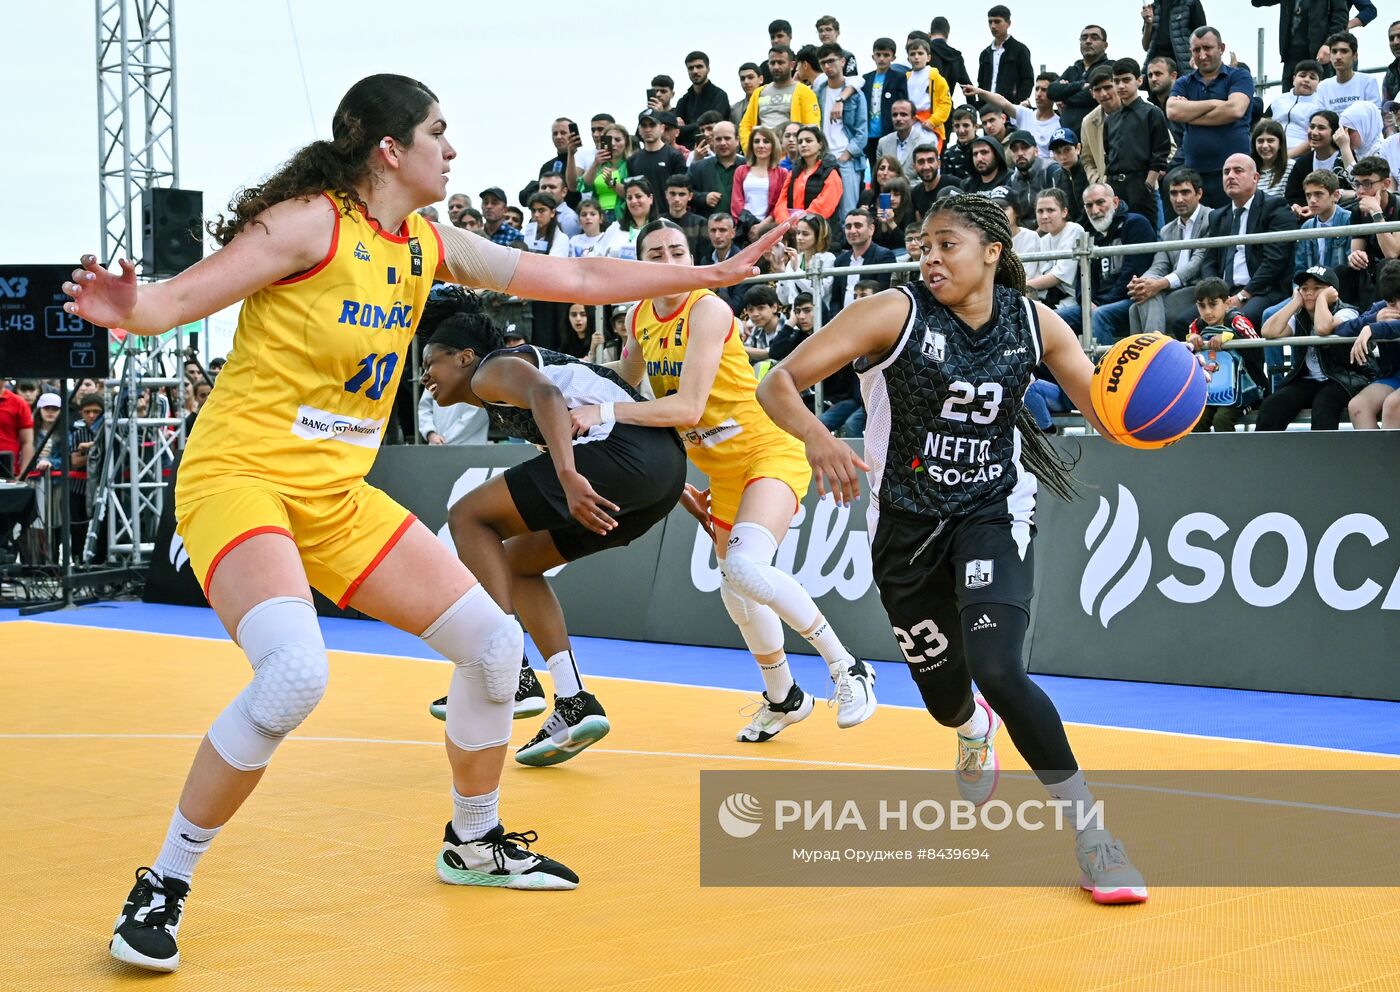 Игры женской мировой серии по баскетболу 3х3 в Азербайджане